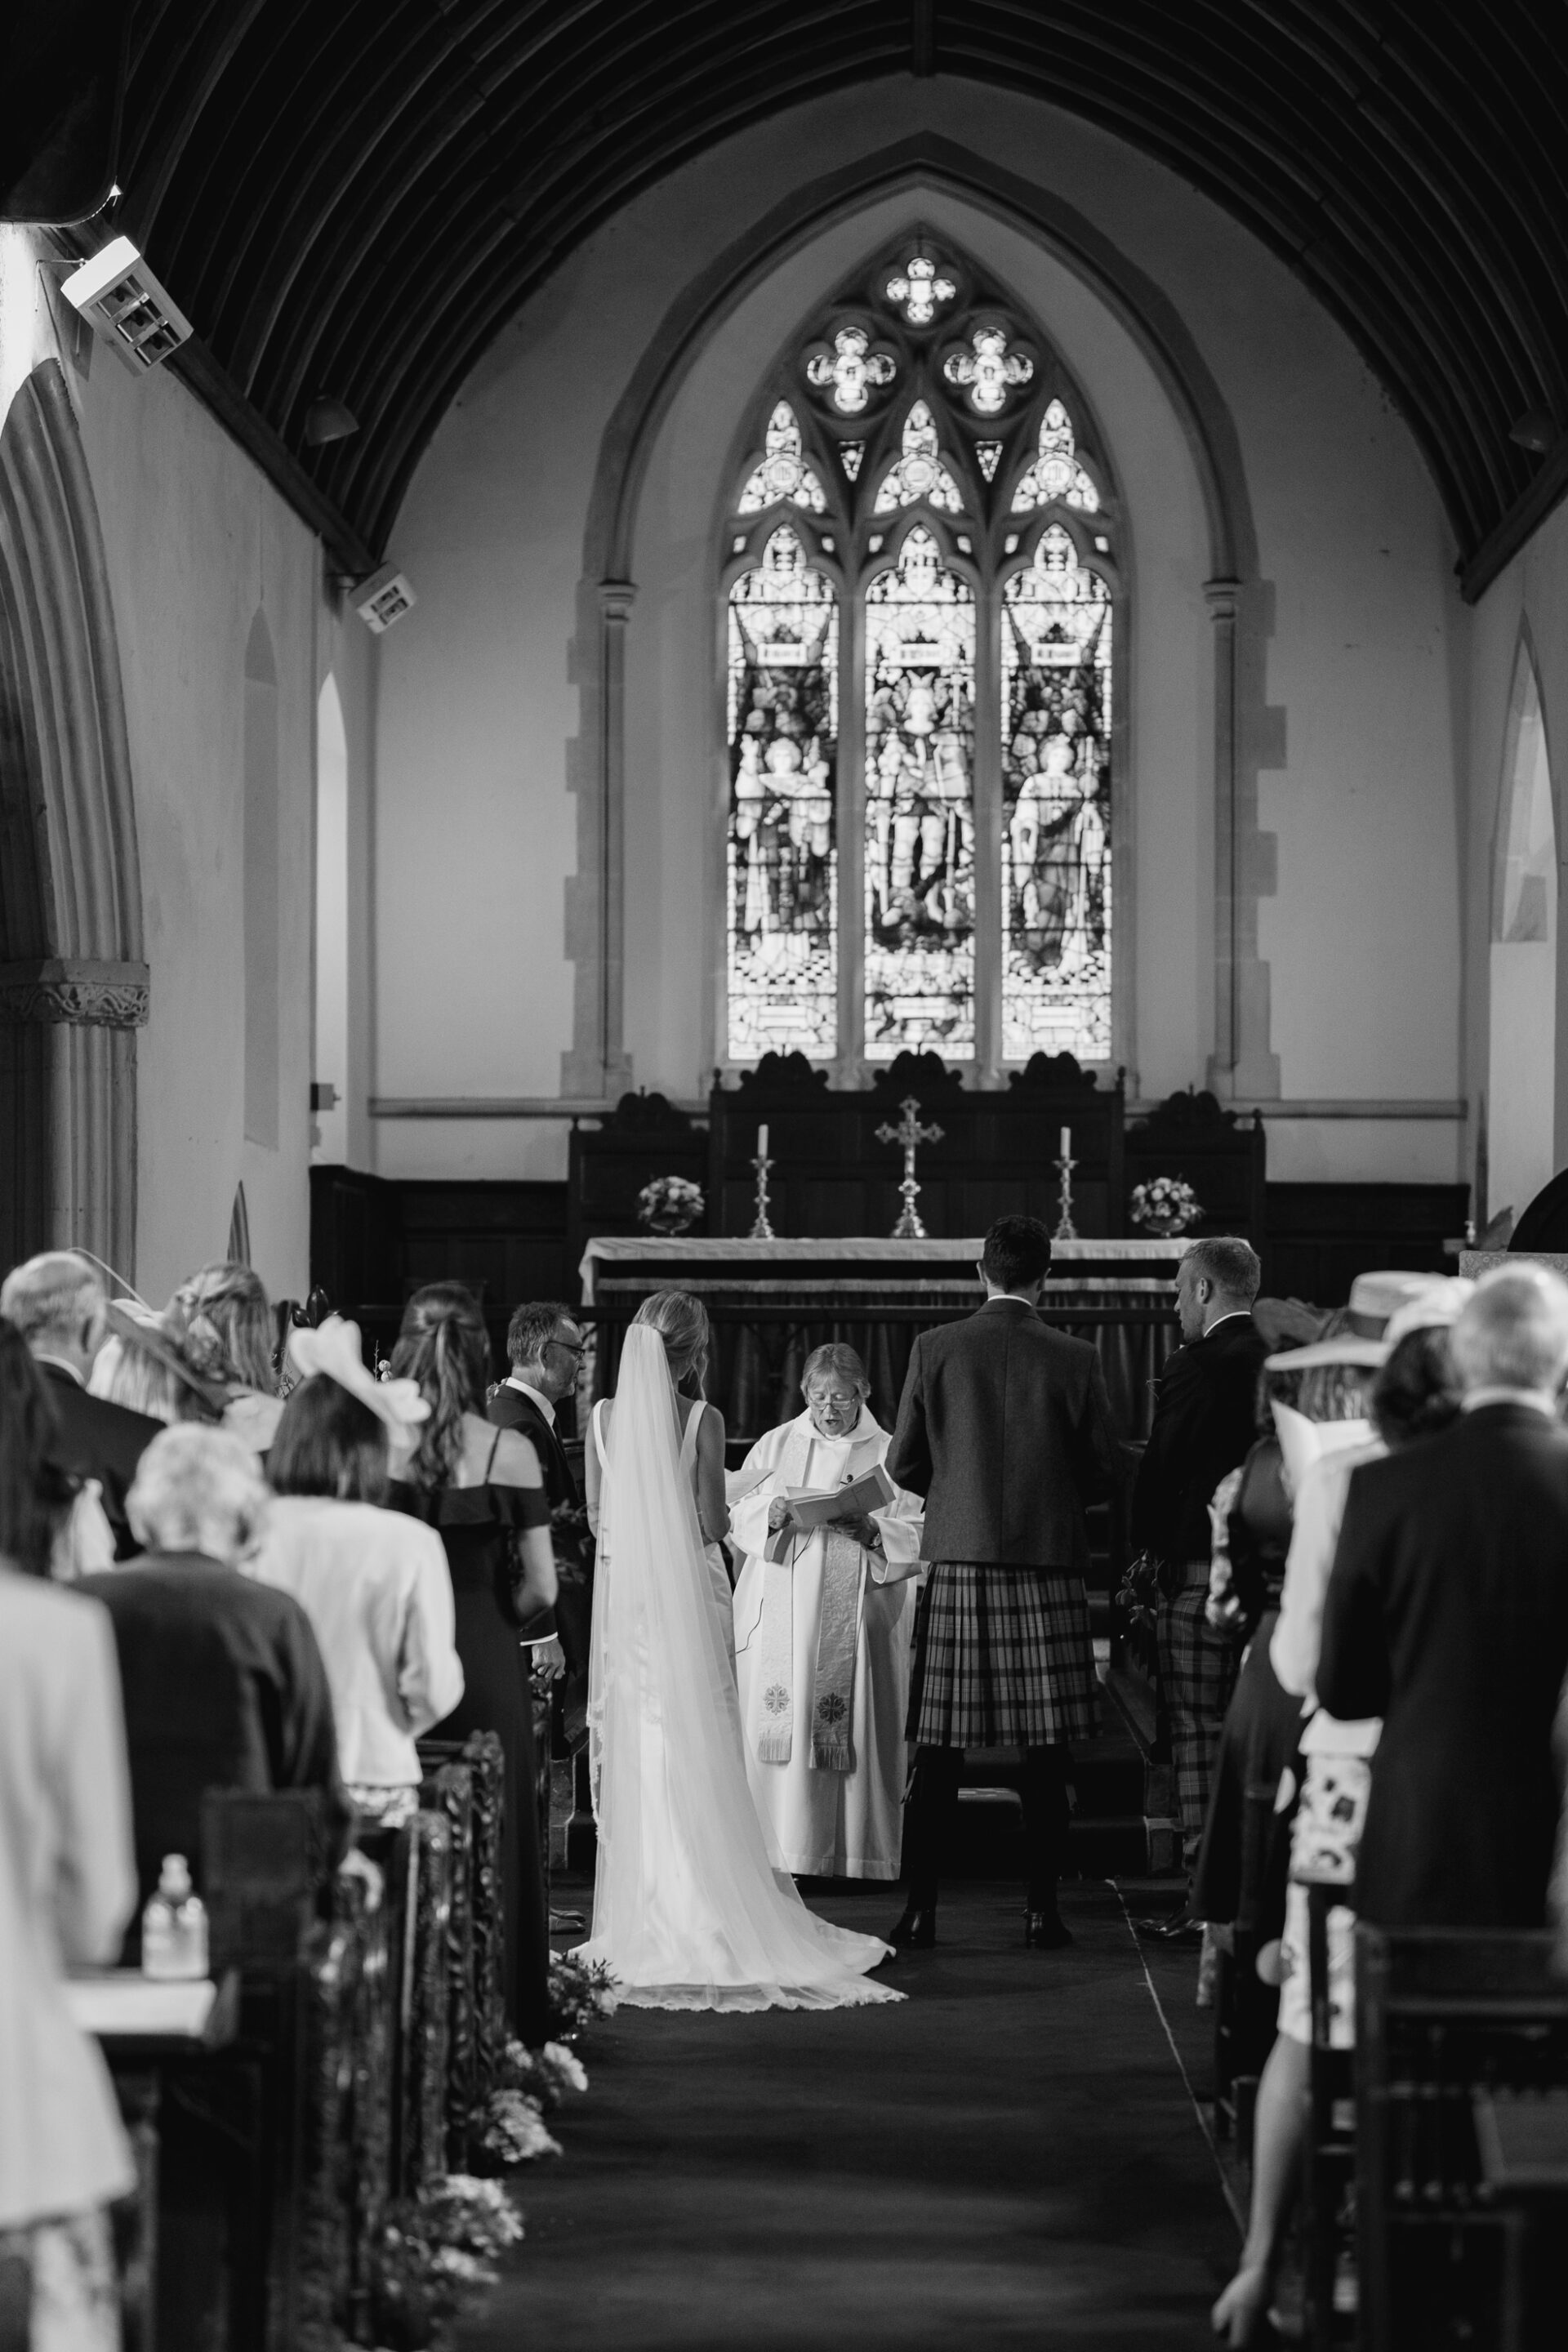 A beautiful wedding ceremony in a traditional Devon church